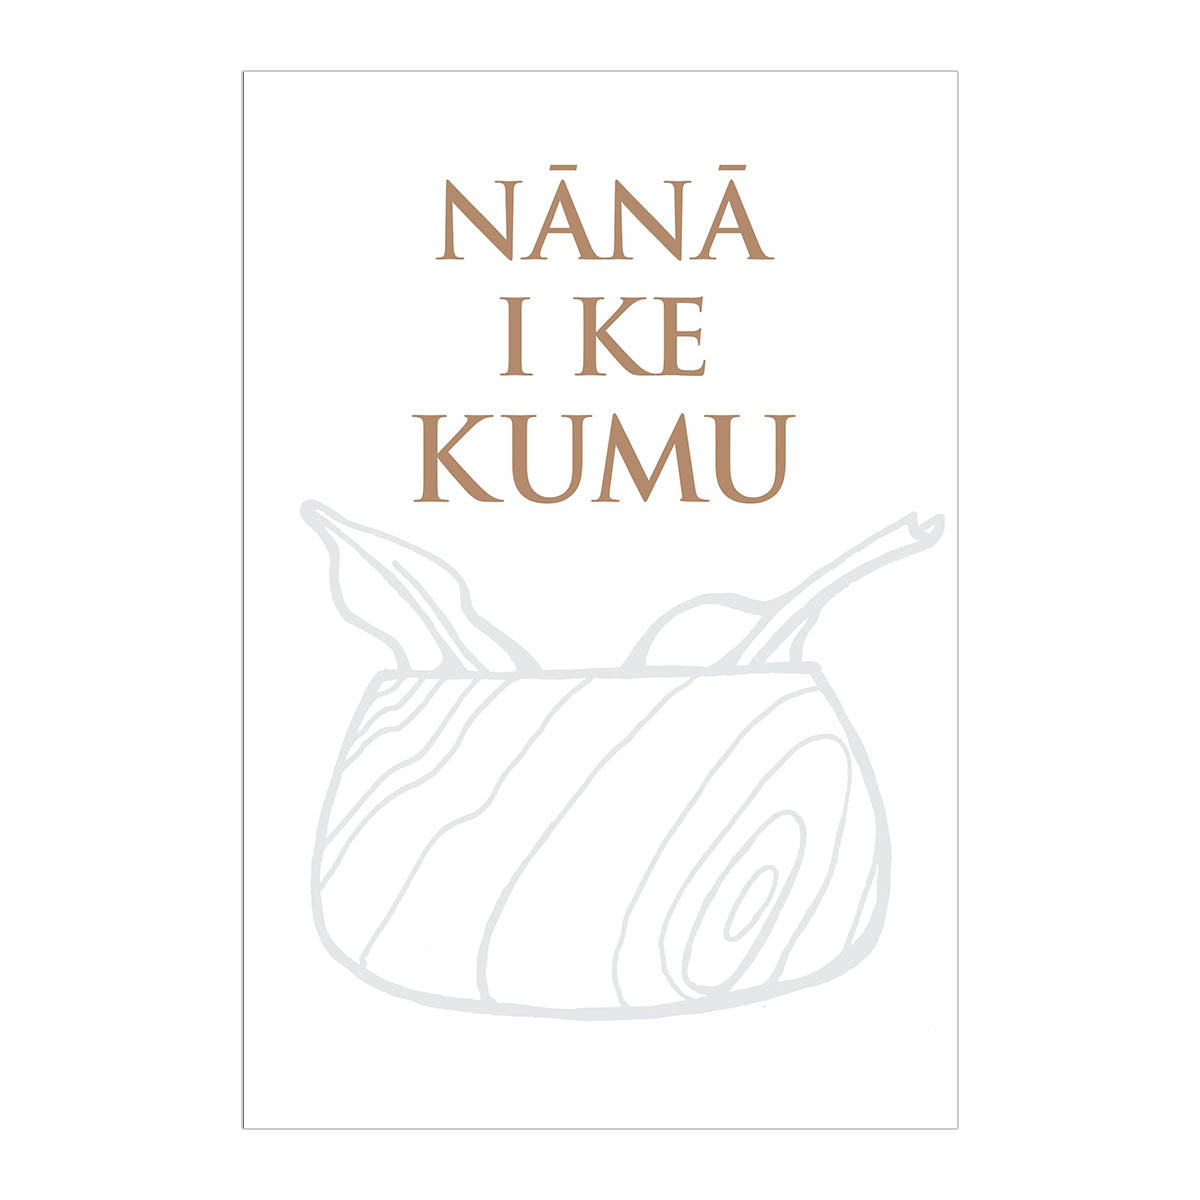 Nana I Ke Kumu (Look to the Source), Vol. 1